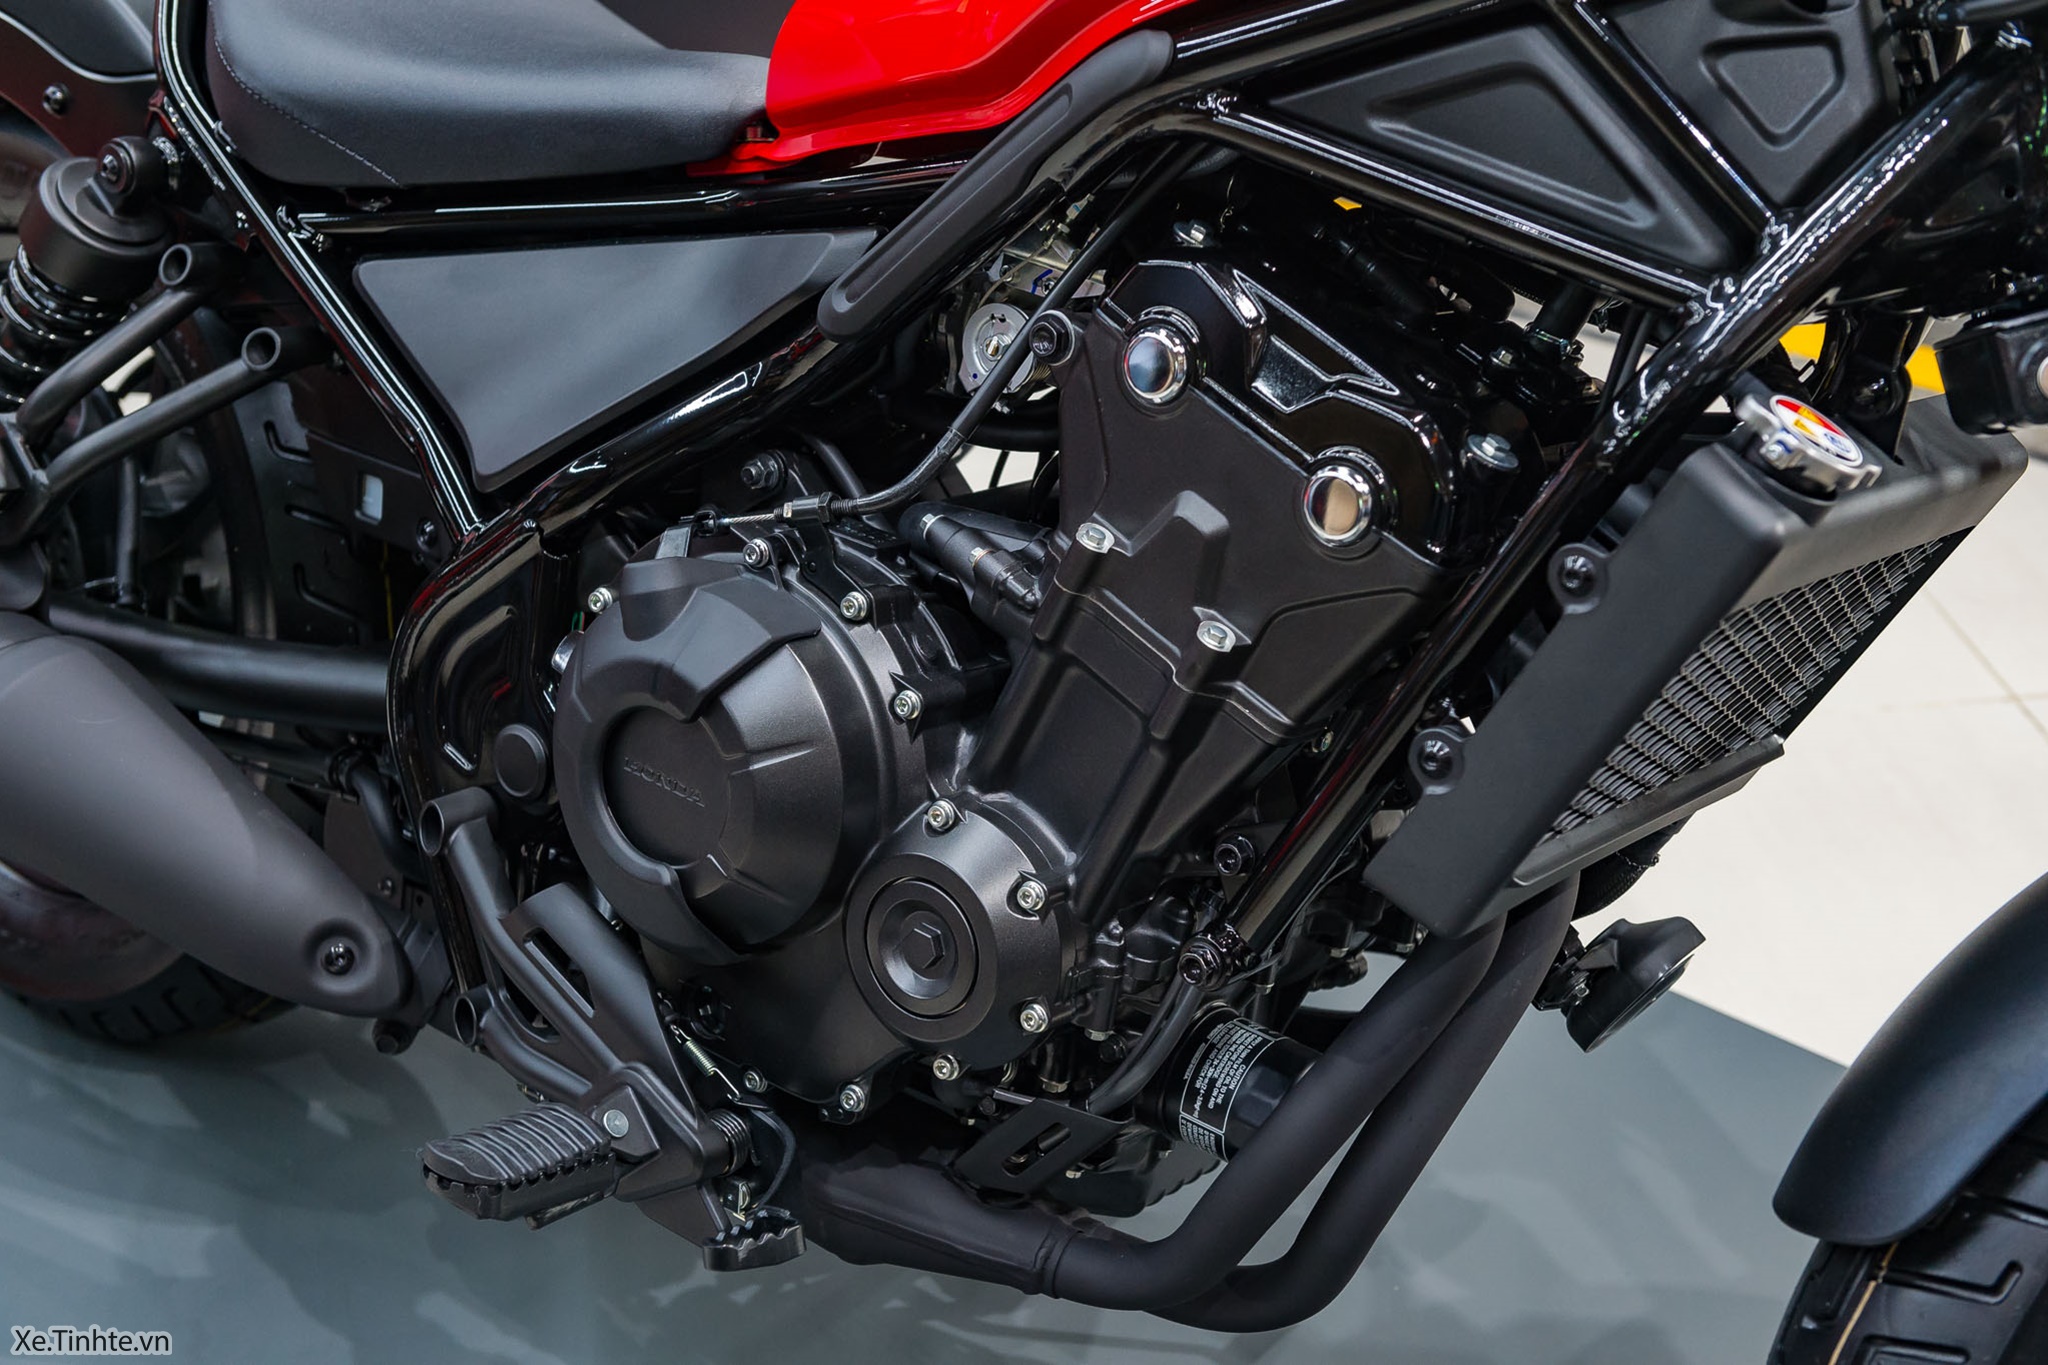 Đánh giá những mẫu xe moto Honda 500 cc  Xe moto Honda mạnh mẽ giá dưới  200 triệu  Mô Tô Việt